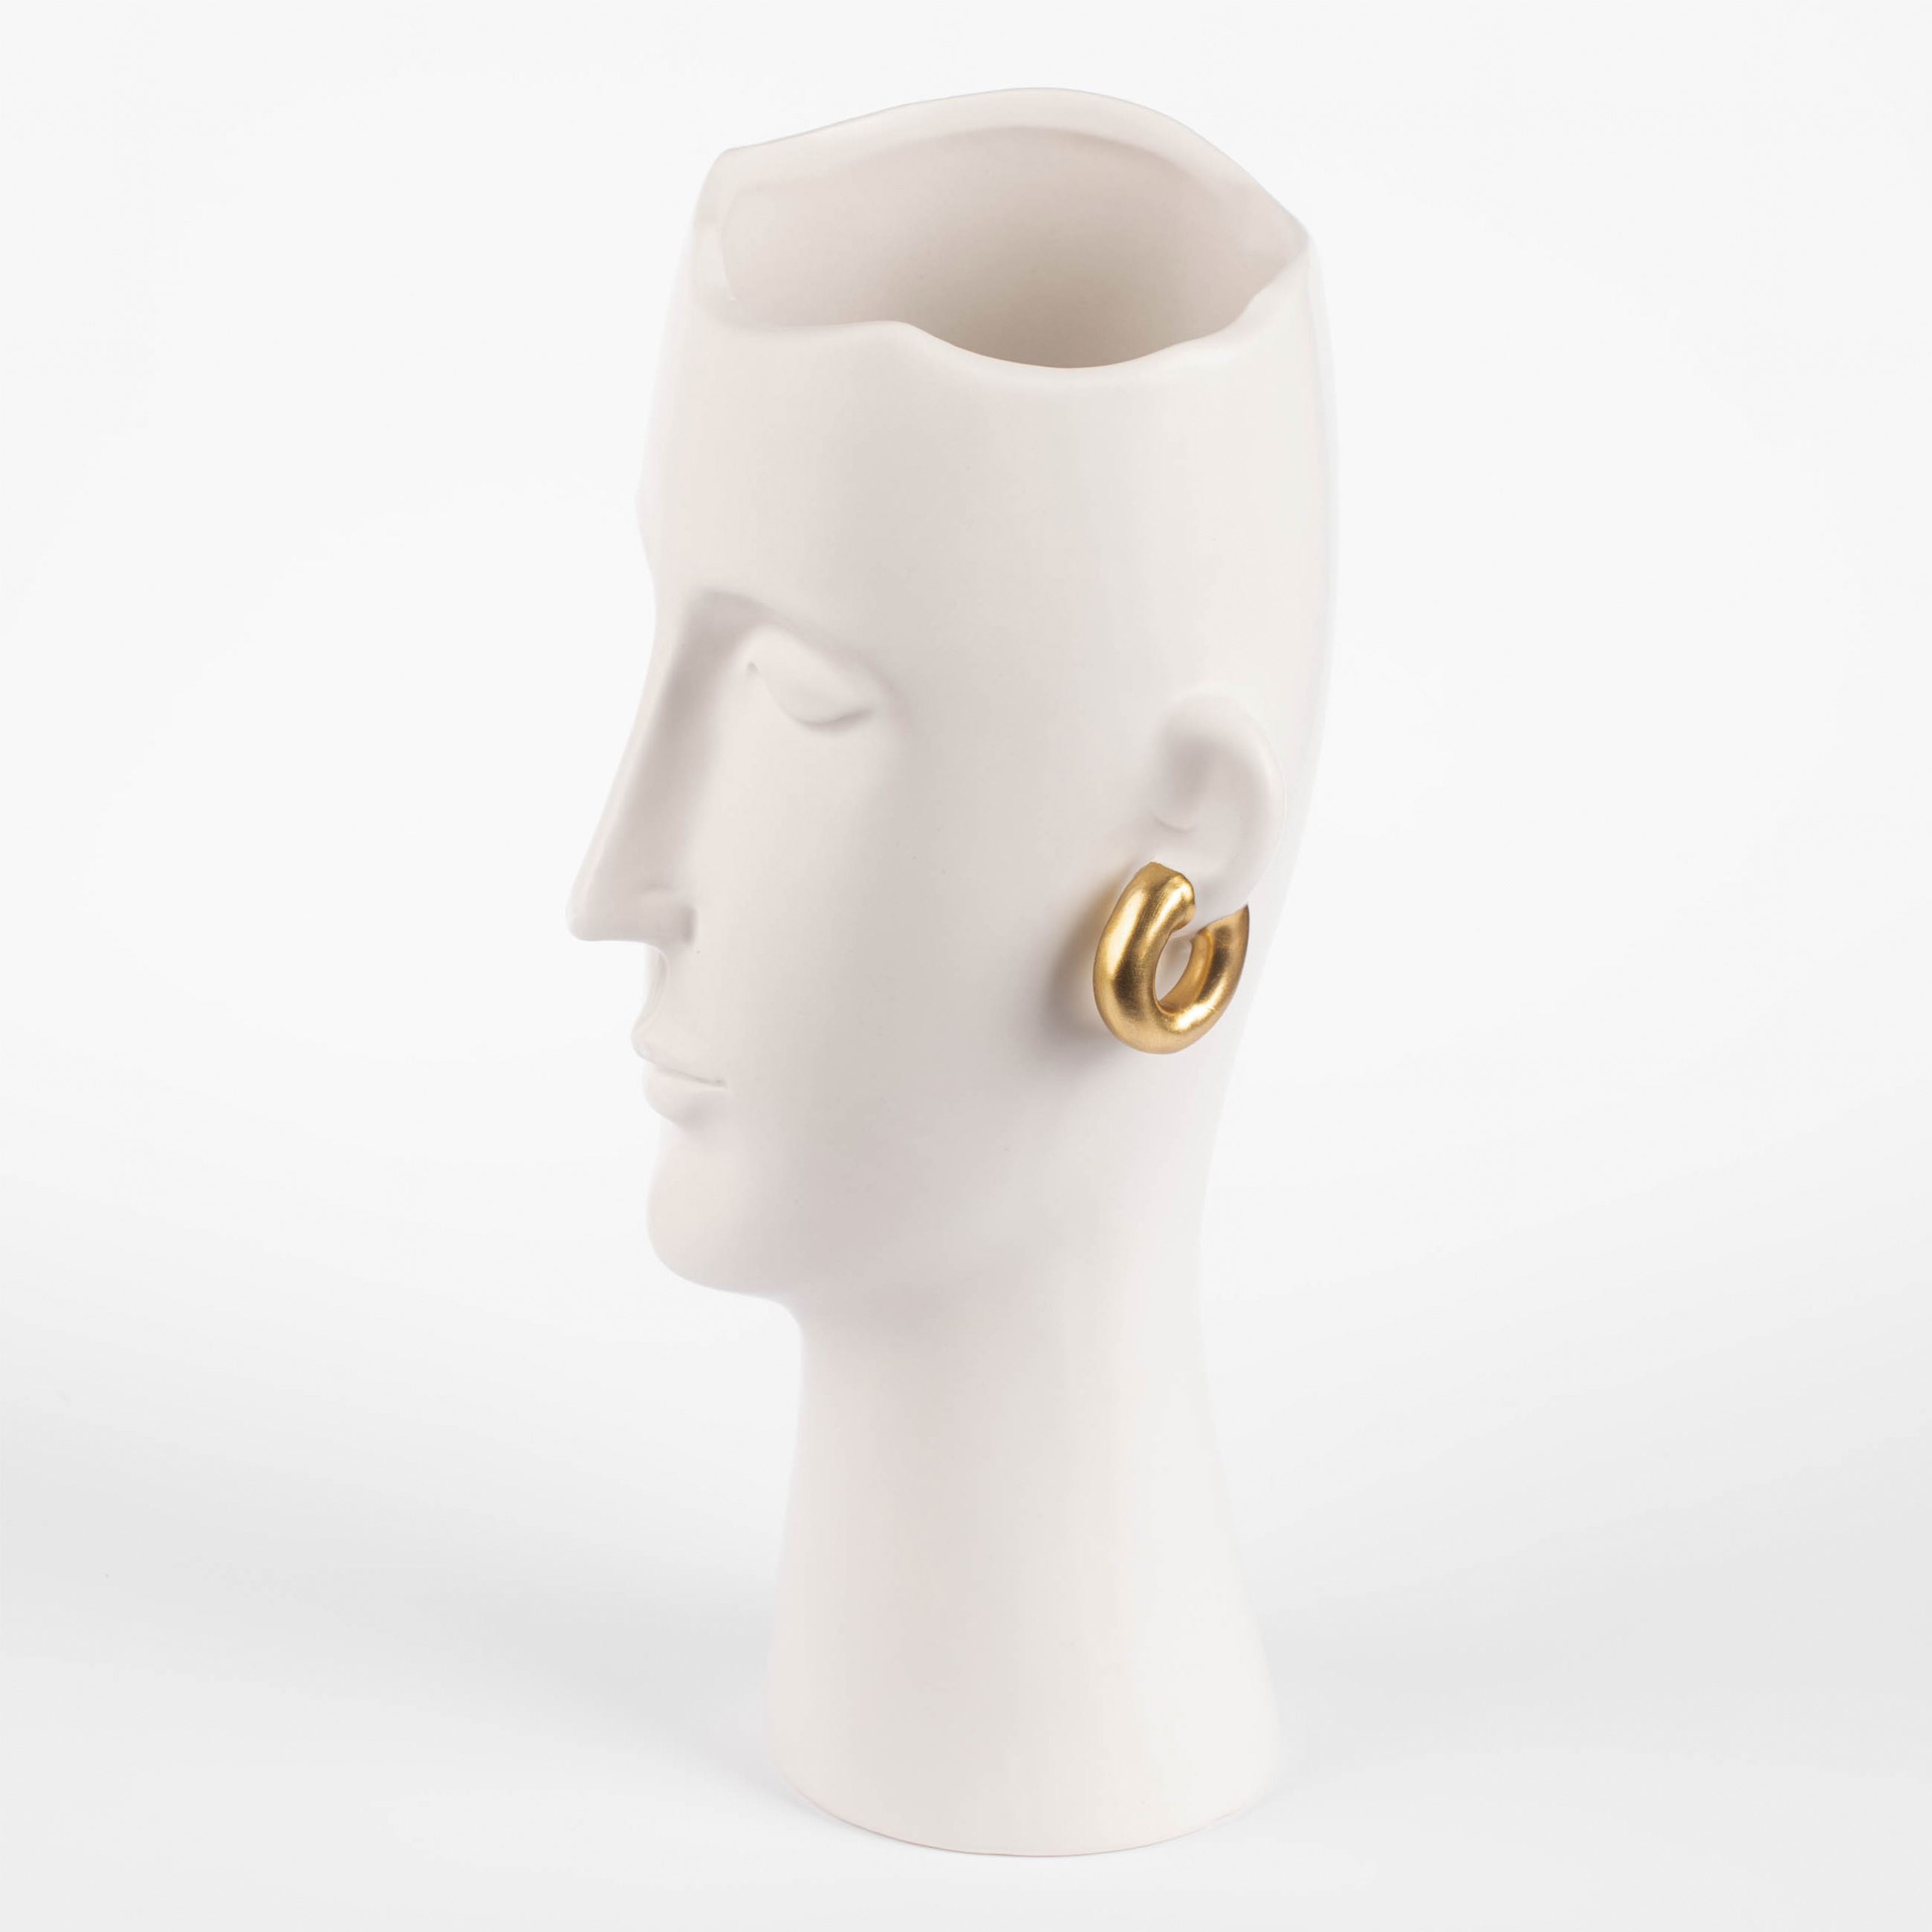 Ваза для цветов, 33 см, декоративная, керамика, белая, Девушка в золотистых сережках, Face изображение № 3